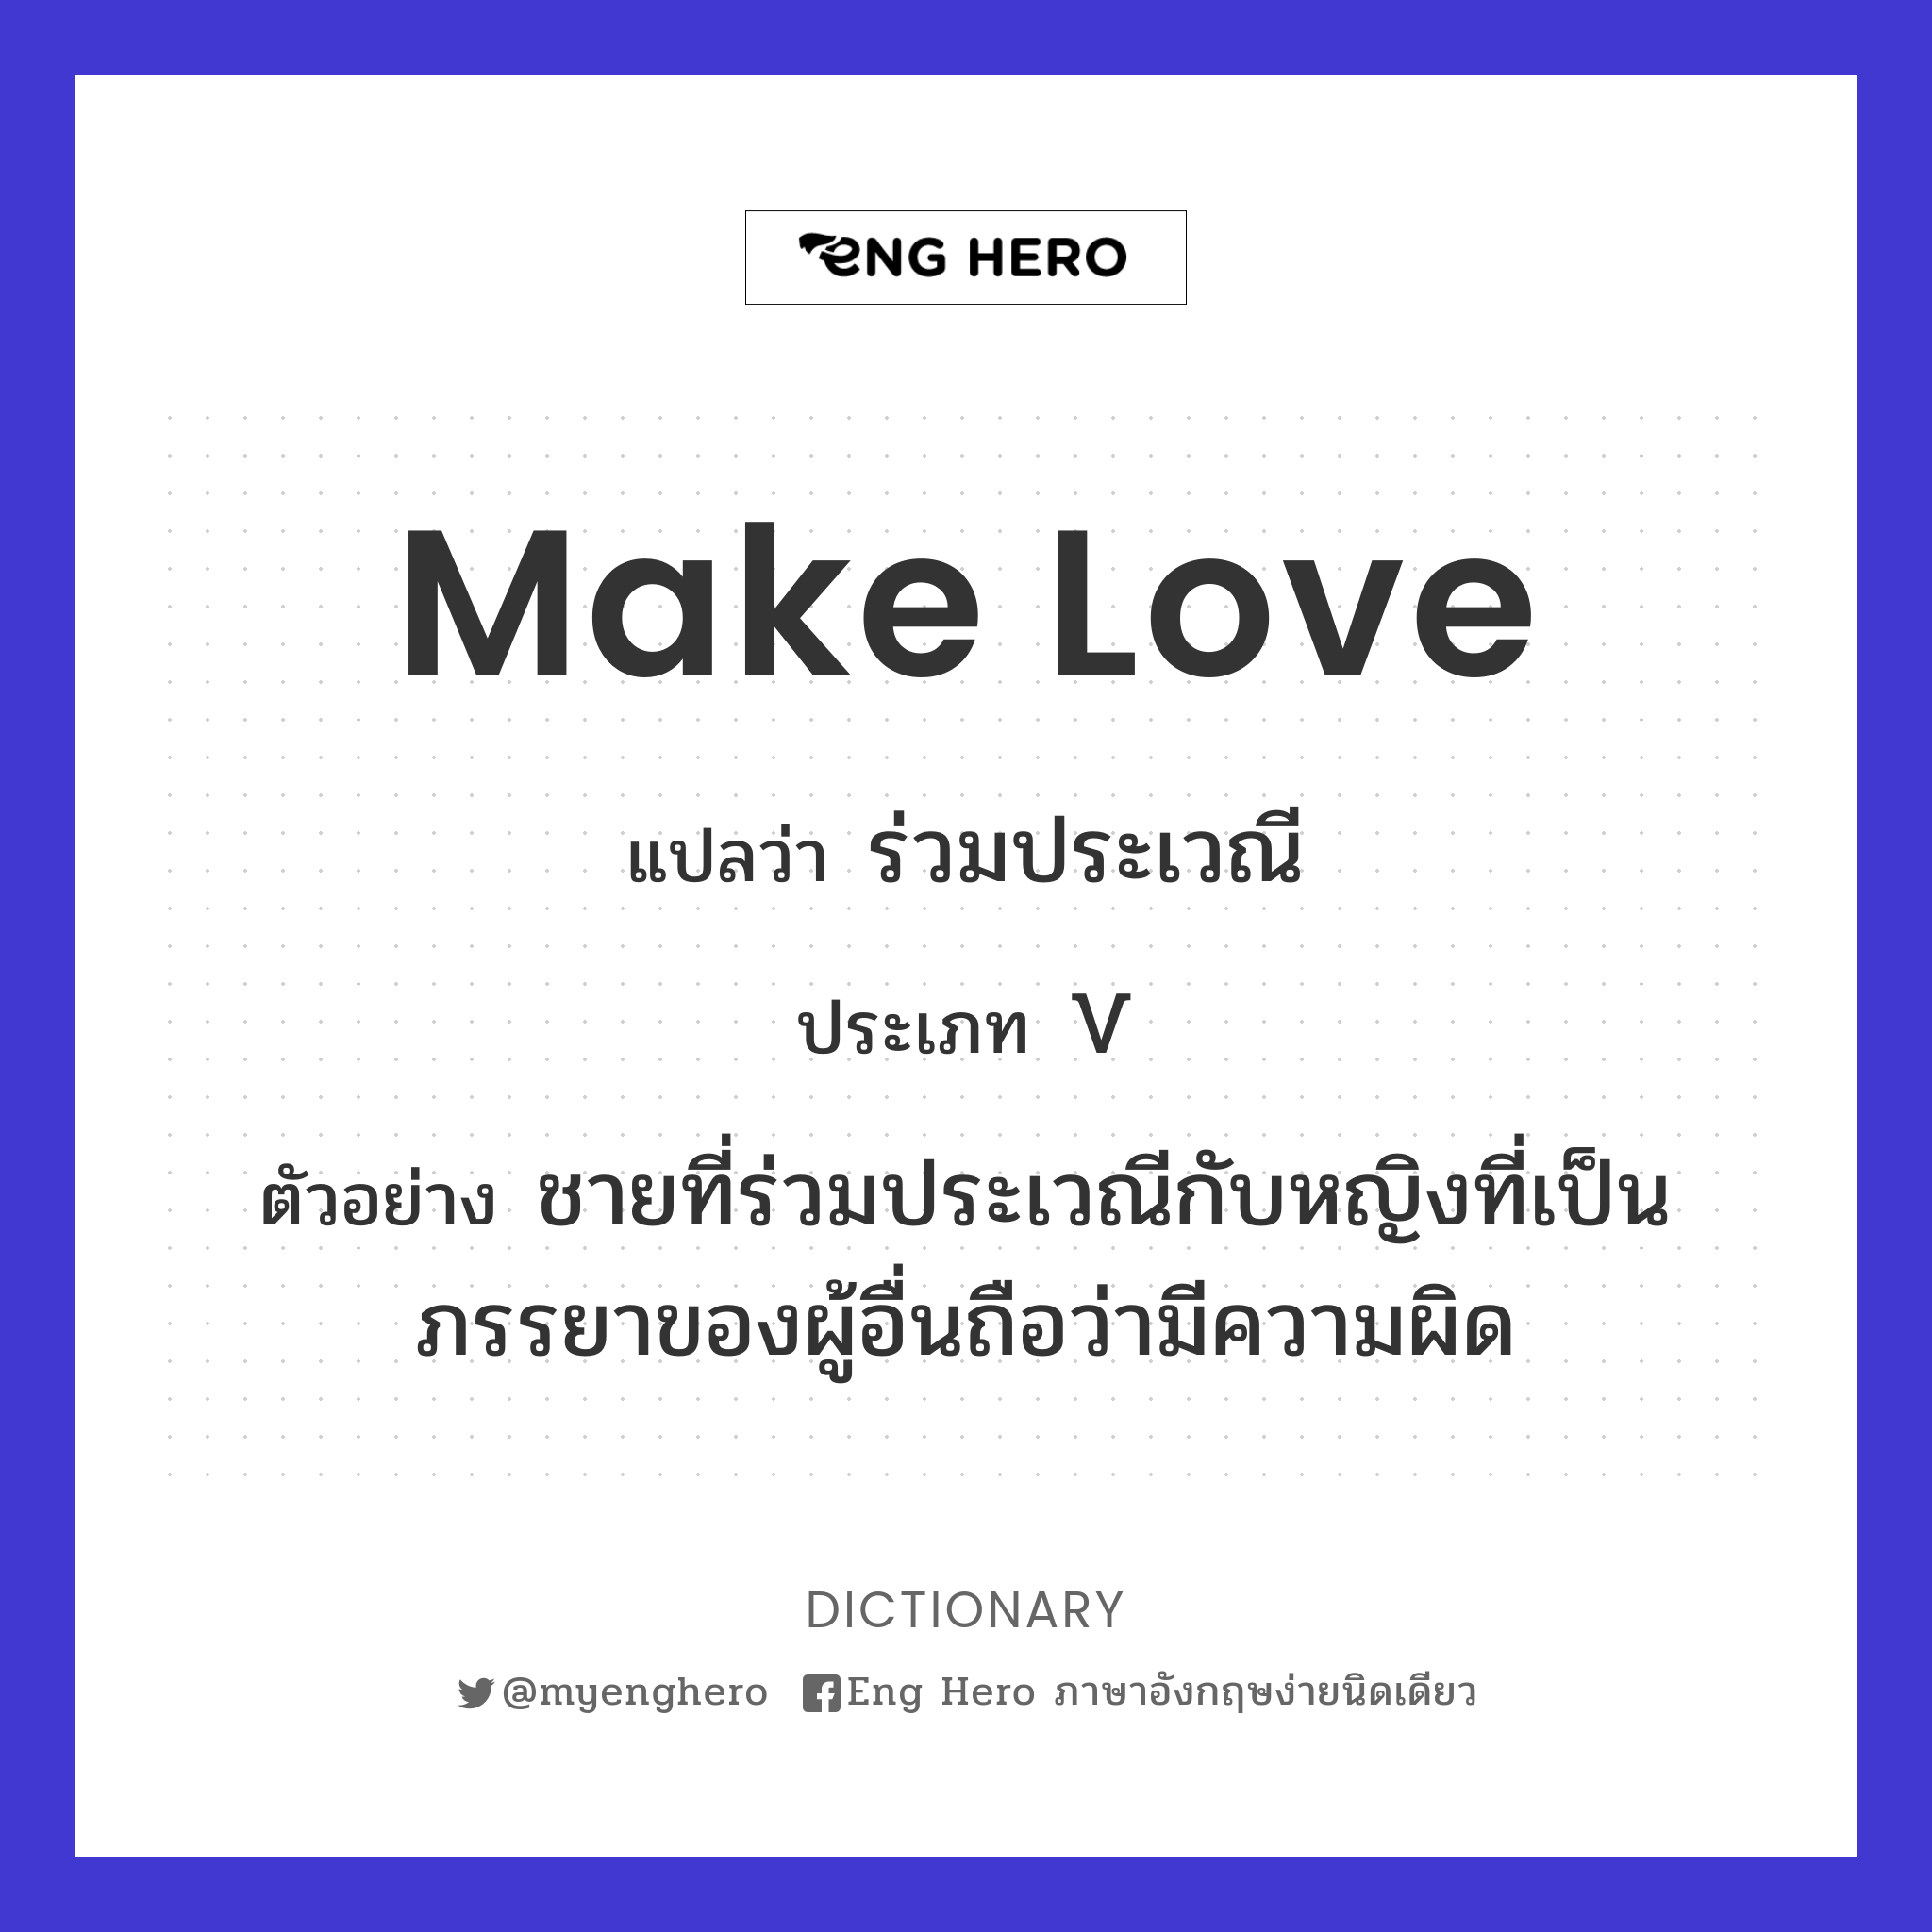 make love